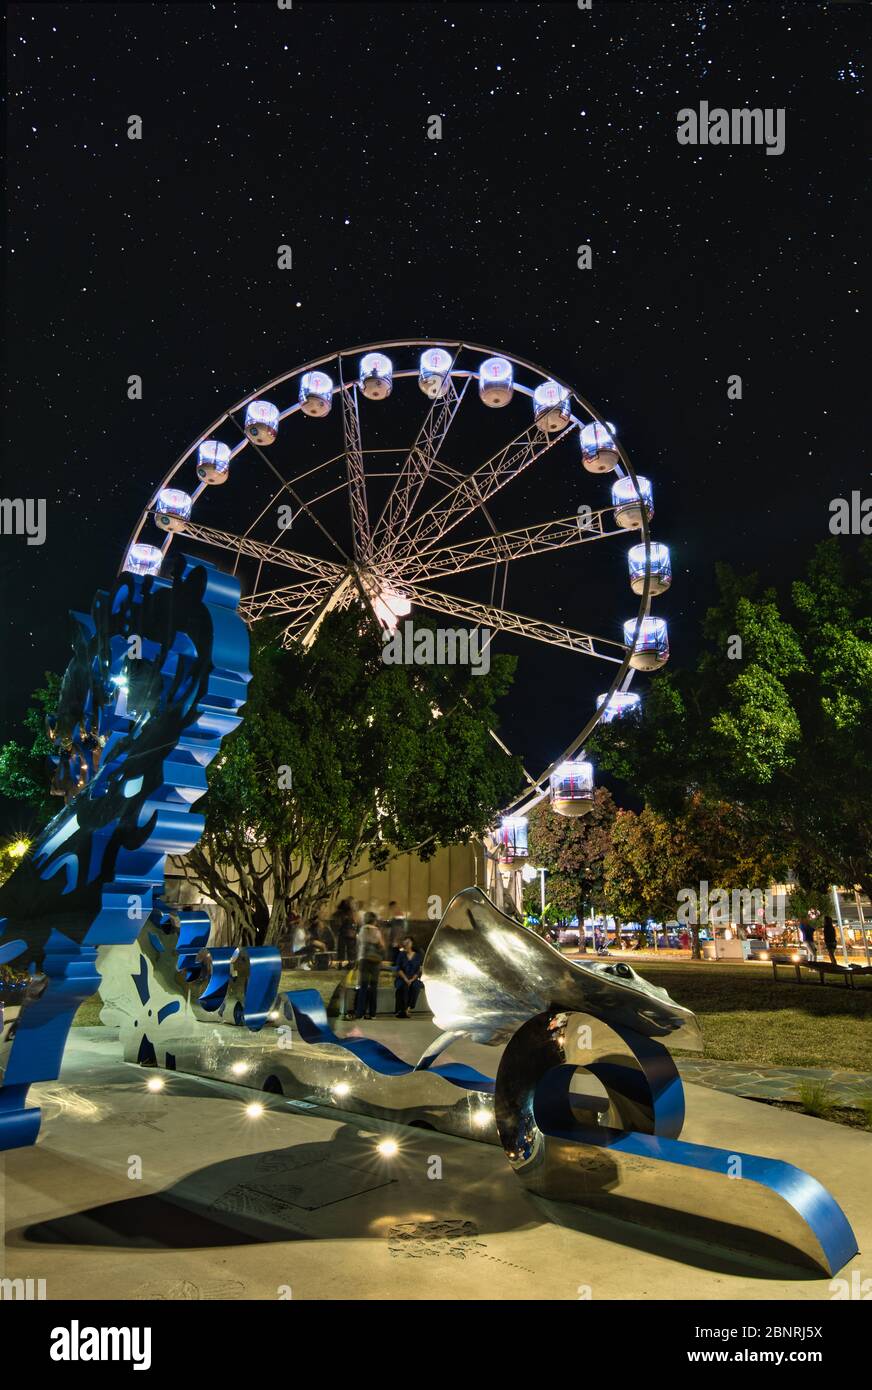 L'attrazione Reef Eye con corsa in ruota panoramica e la spettacolare installazione di opere d'arte sulla spianata di Cairns, Queensland, Australia. Foto Stock